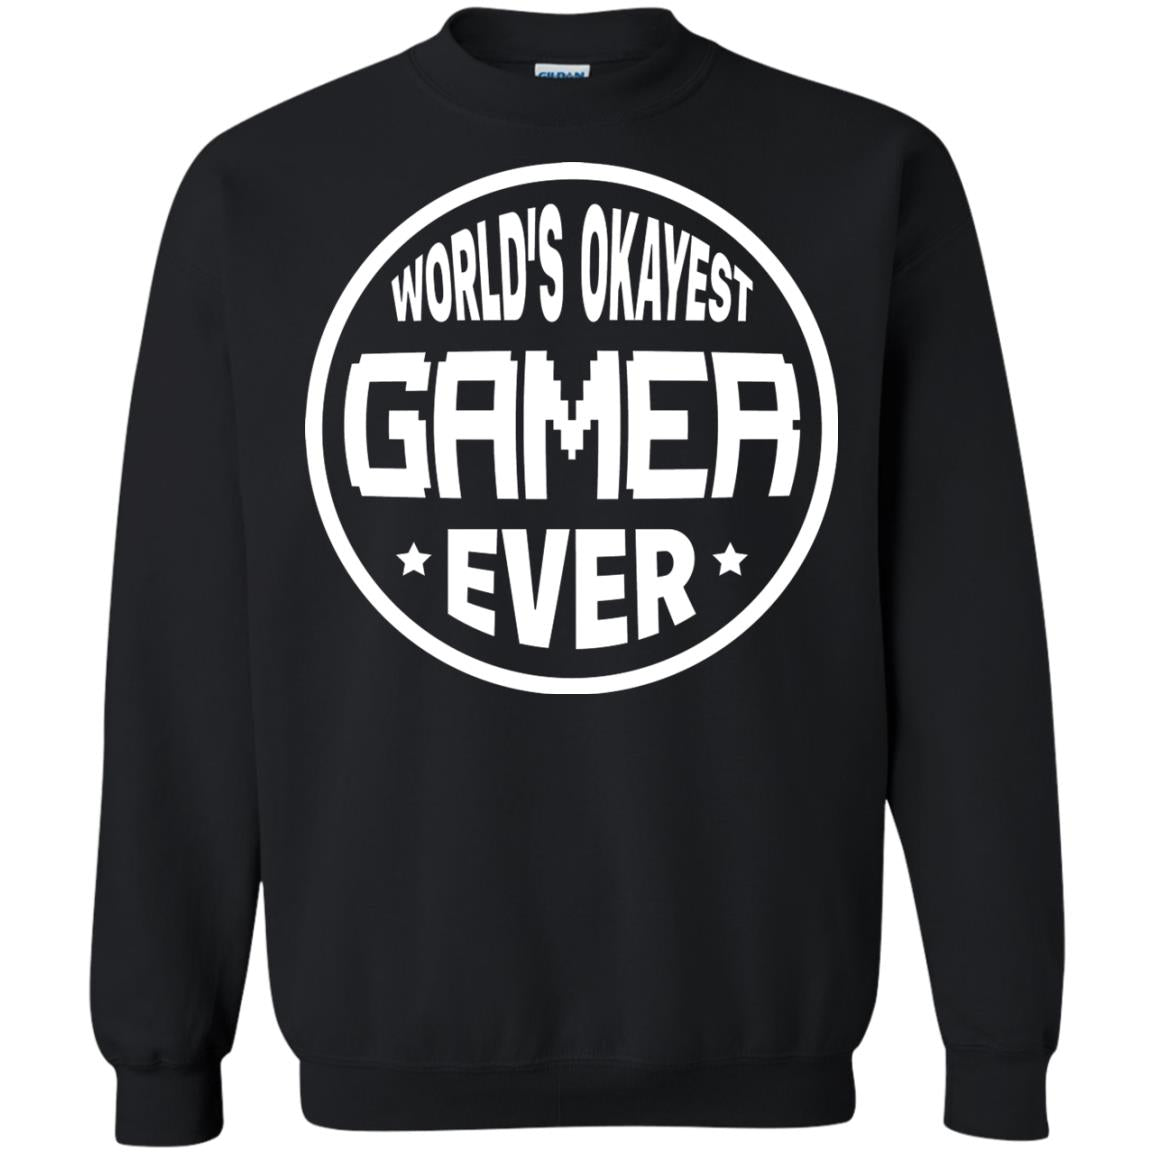 World’s Okayest Gamer Ever Best T-shirt For Gaming Lover